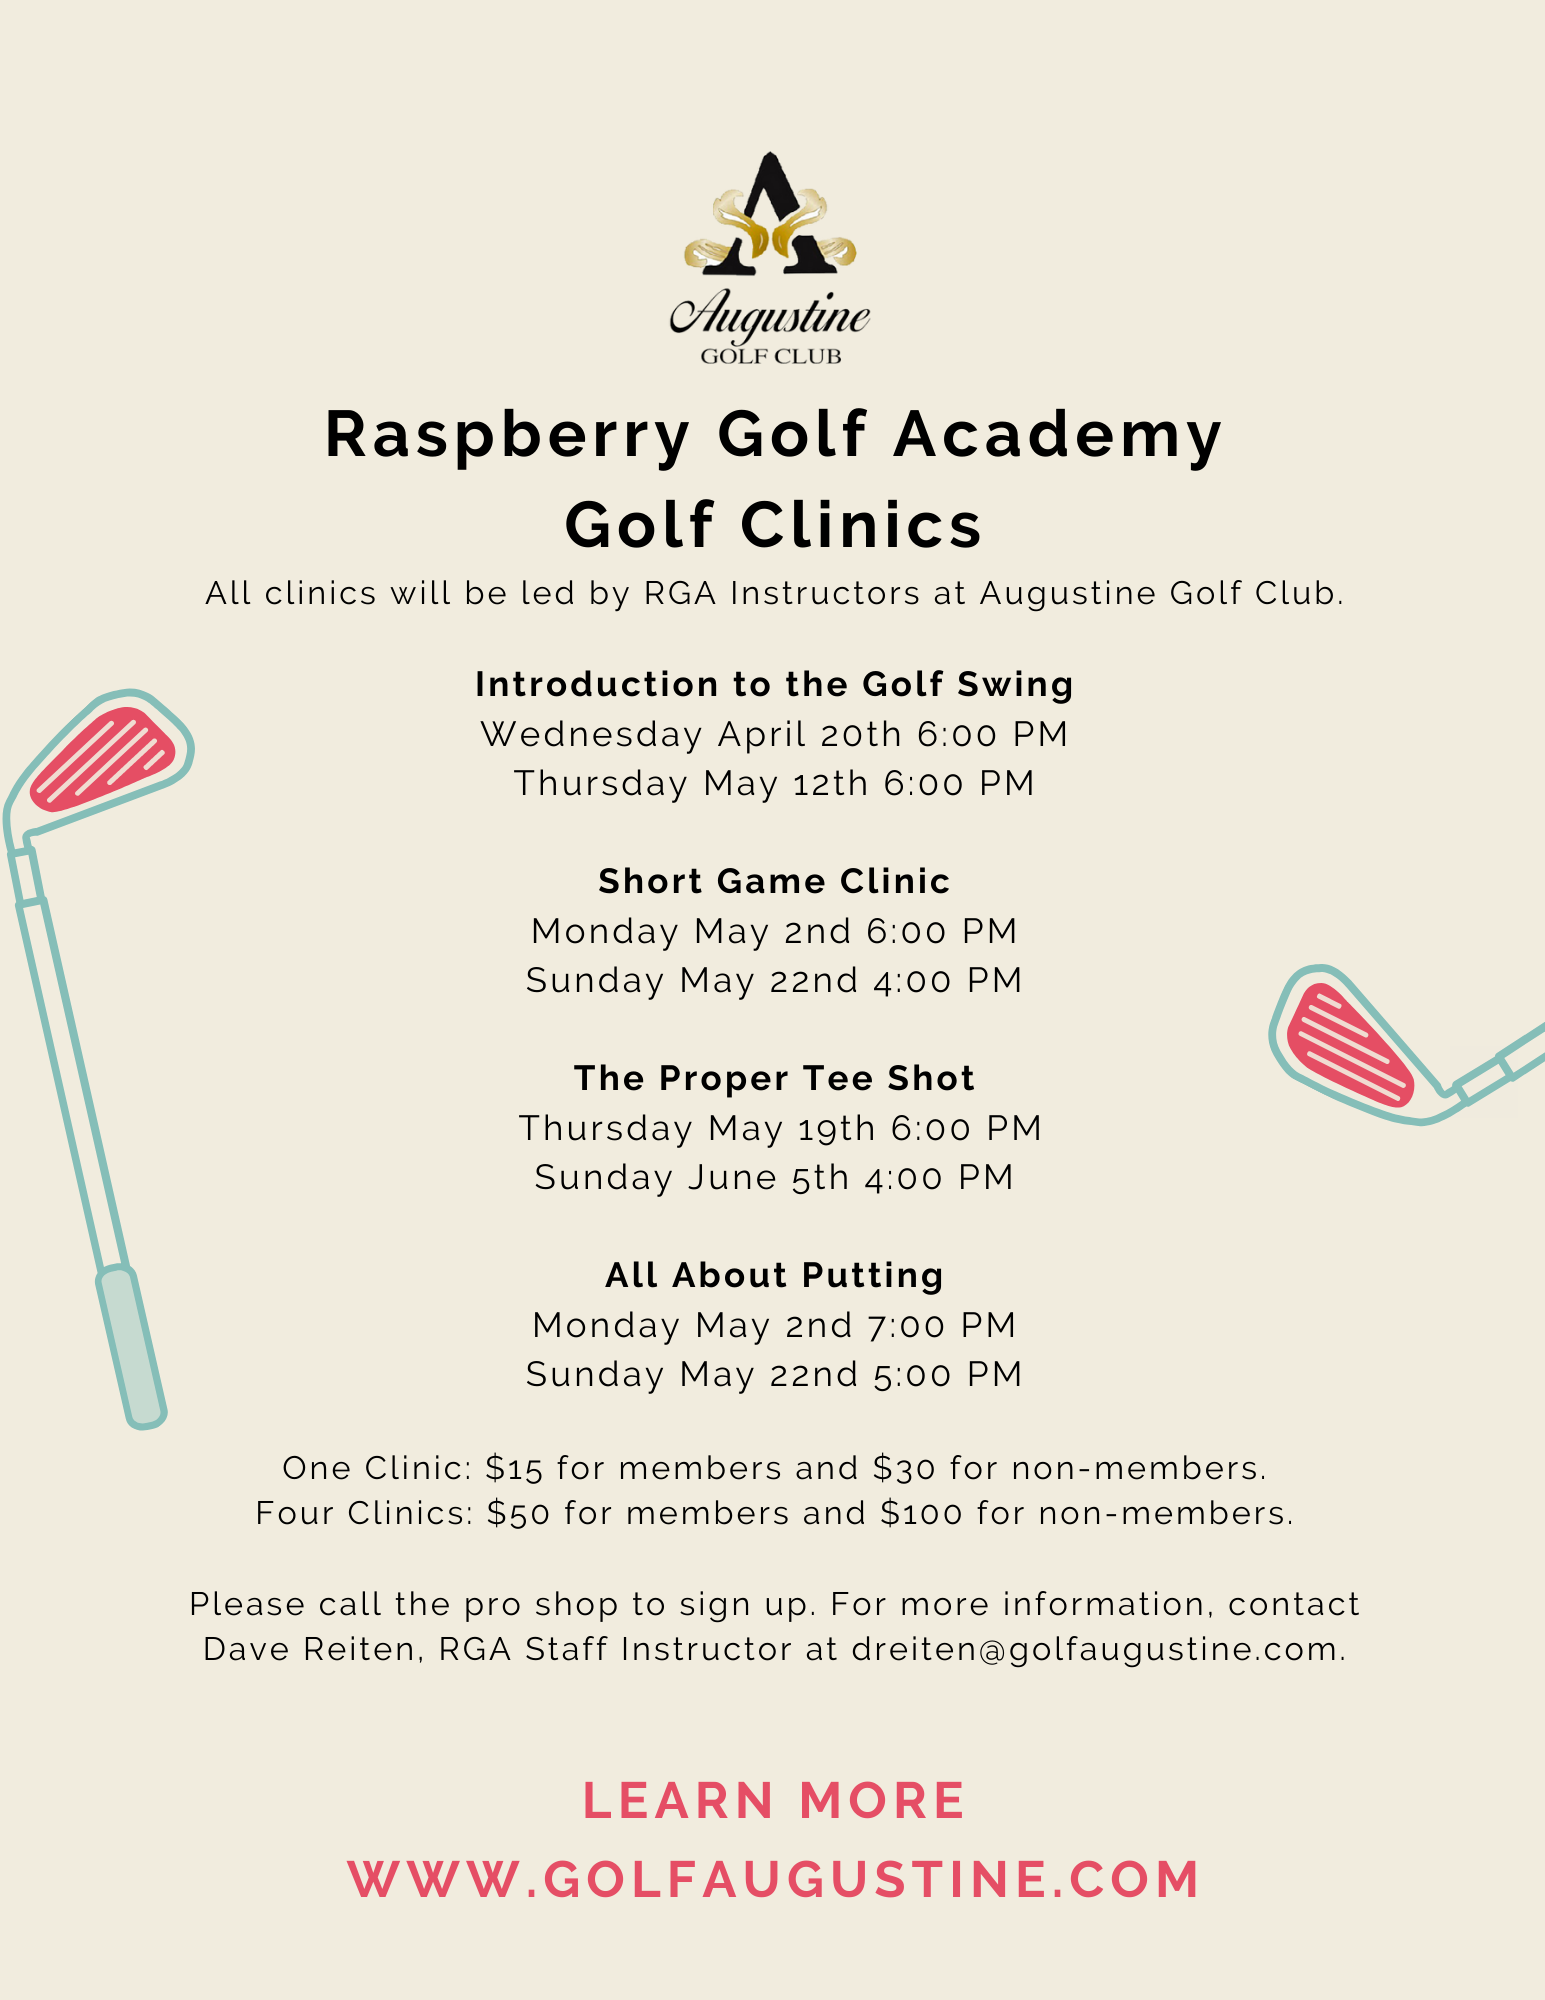 AUG golf clinics